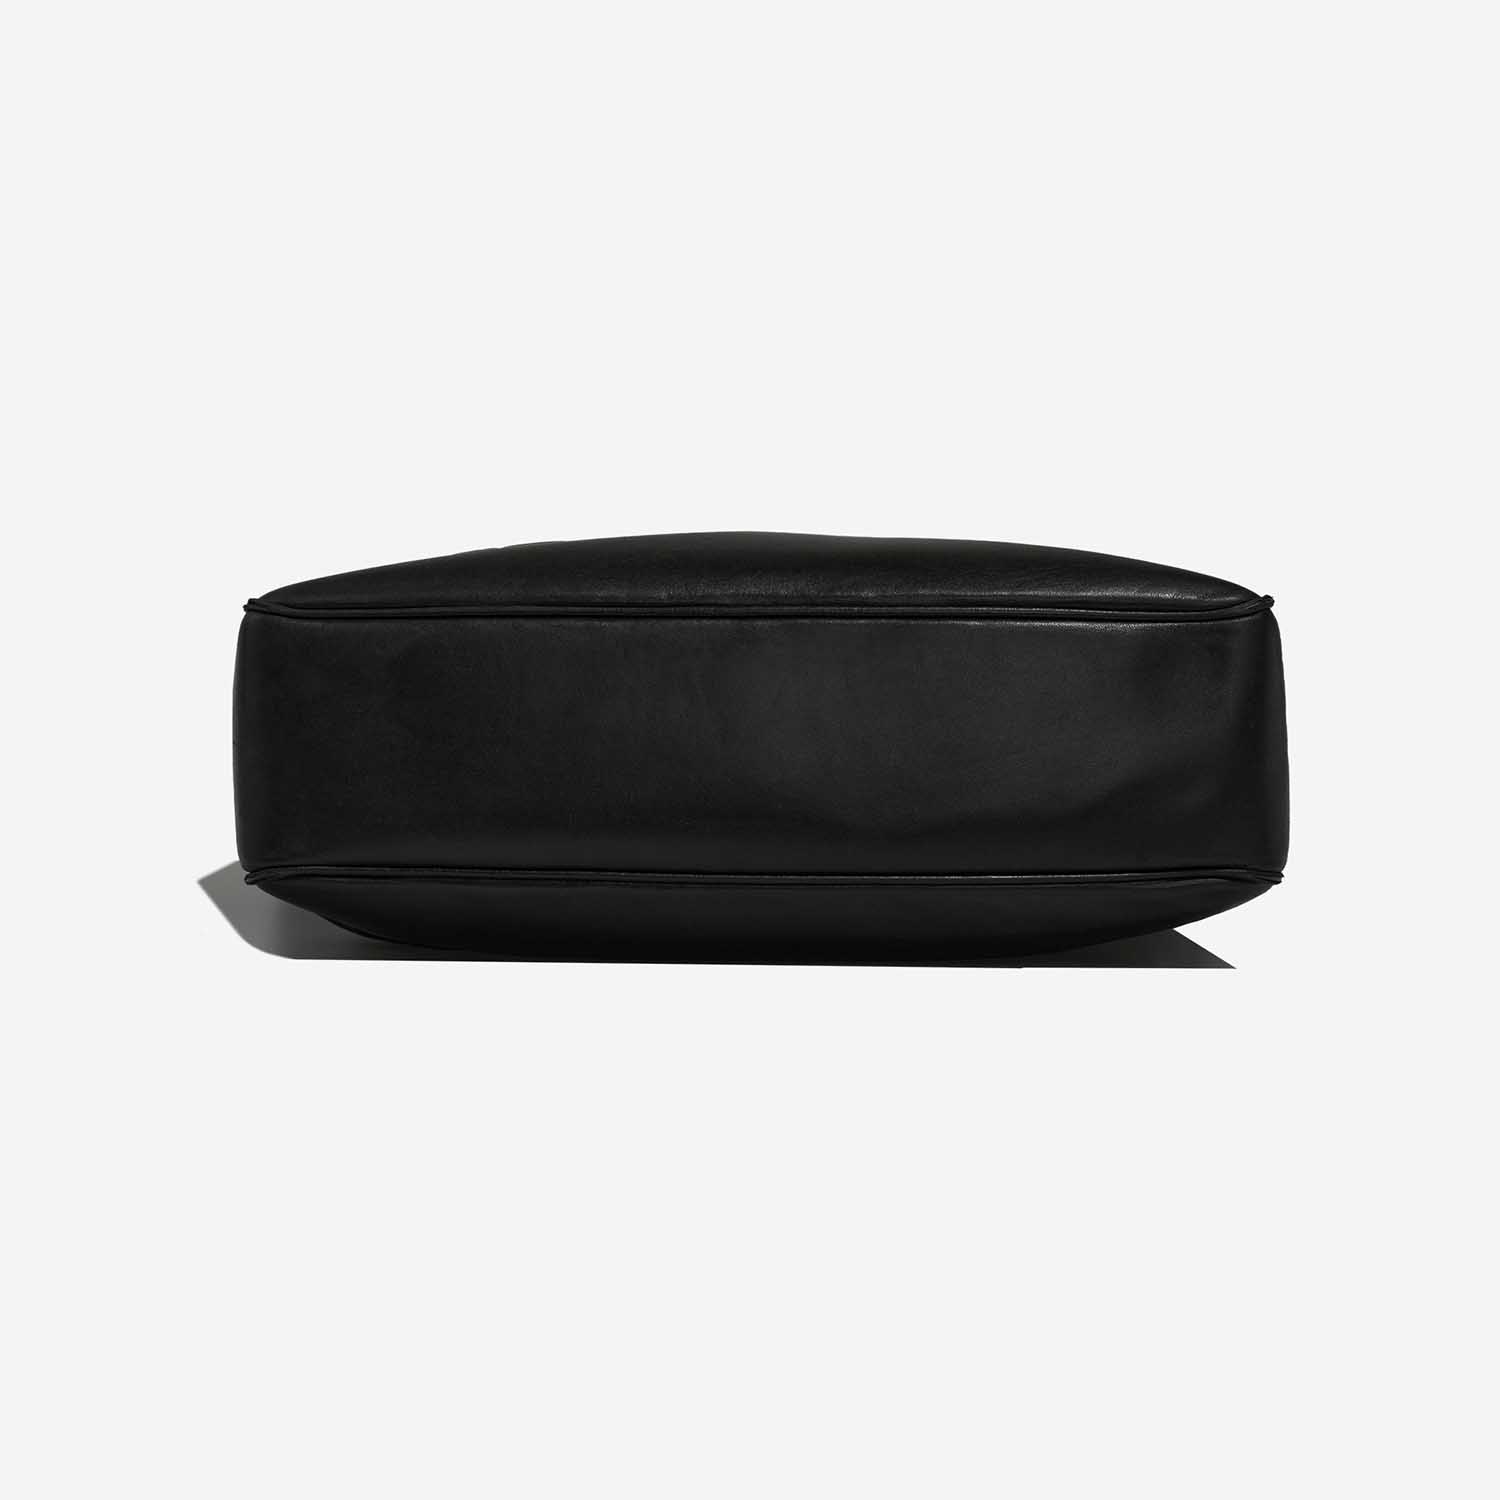 Chanel ShoppingTote Black Bottom | Verkaufen Sie Ihre Designertasche auf Saclab.com